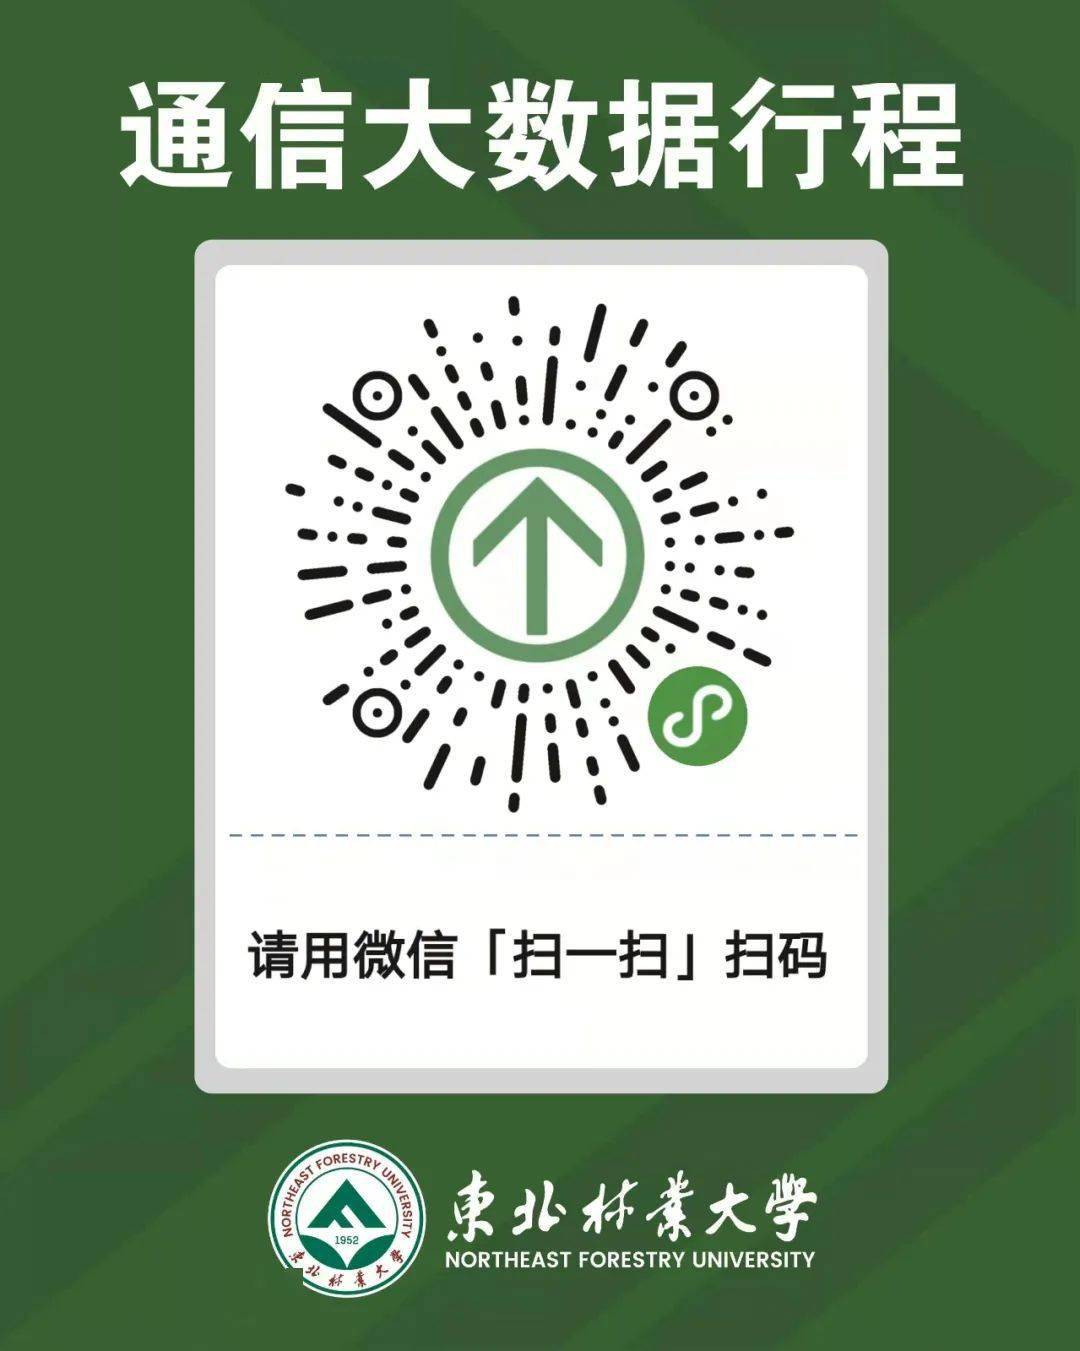 龙江行程二维码图片图片